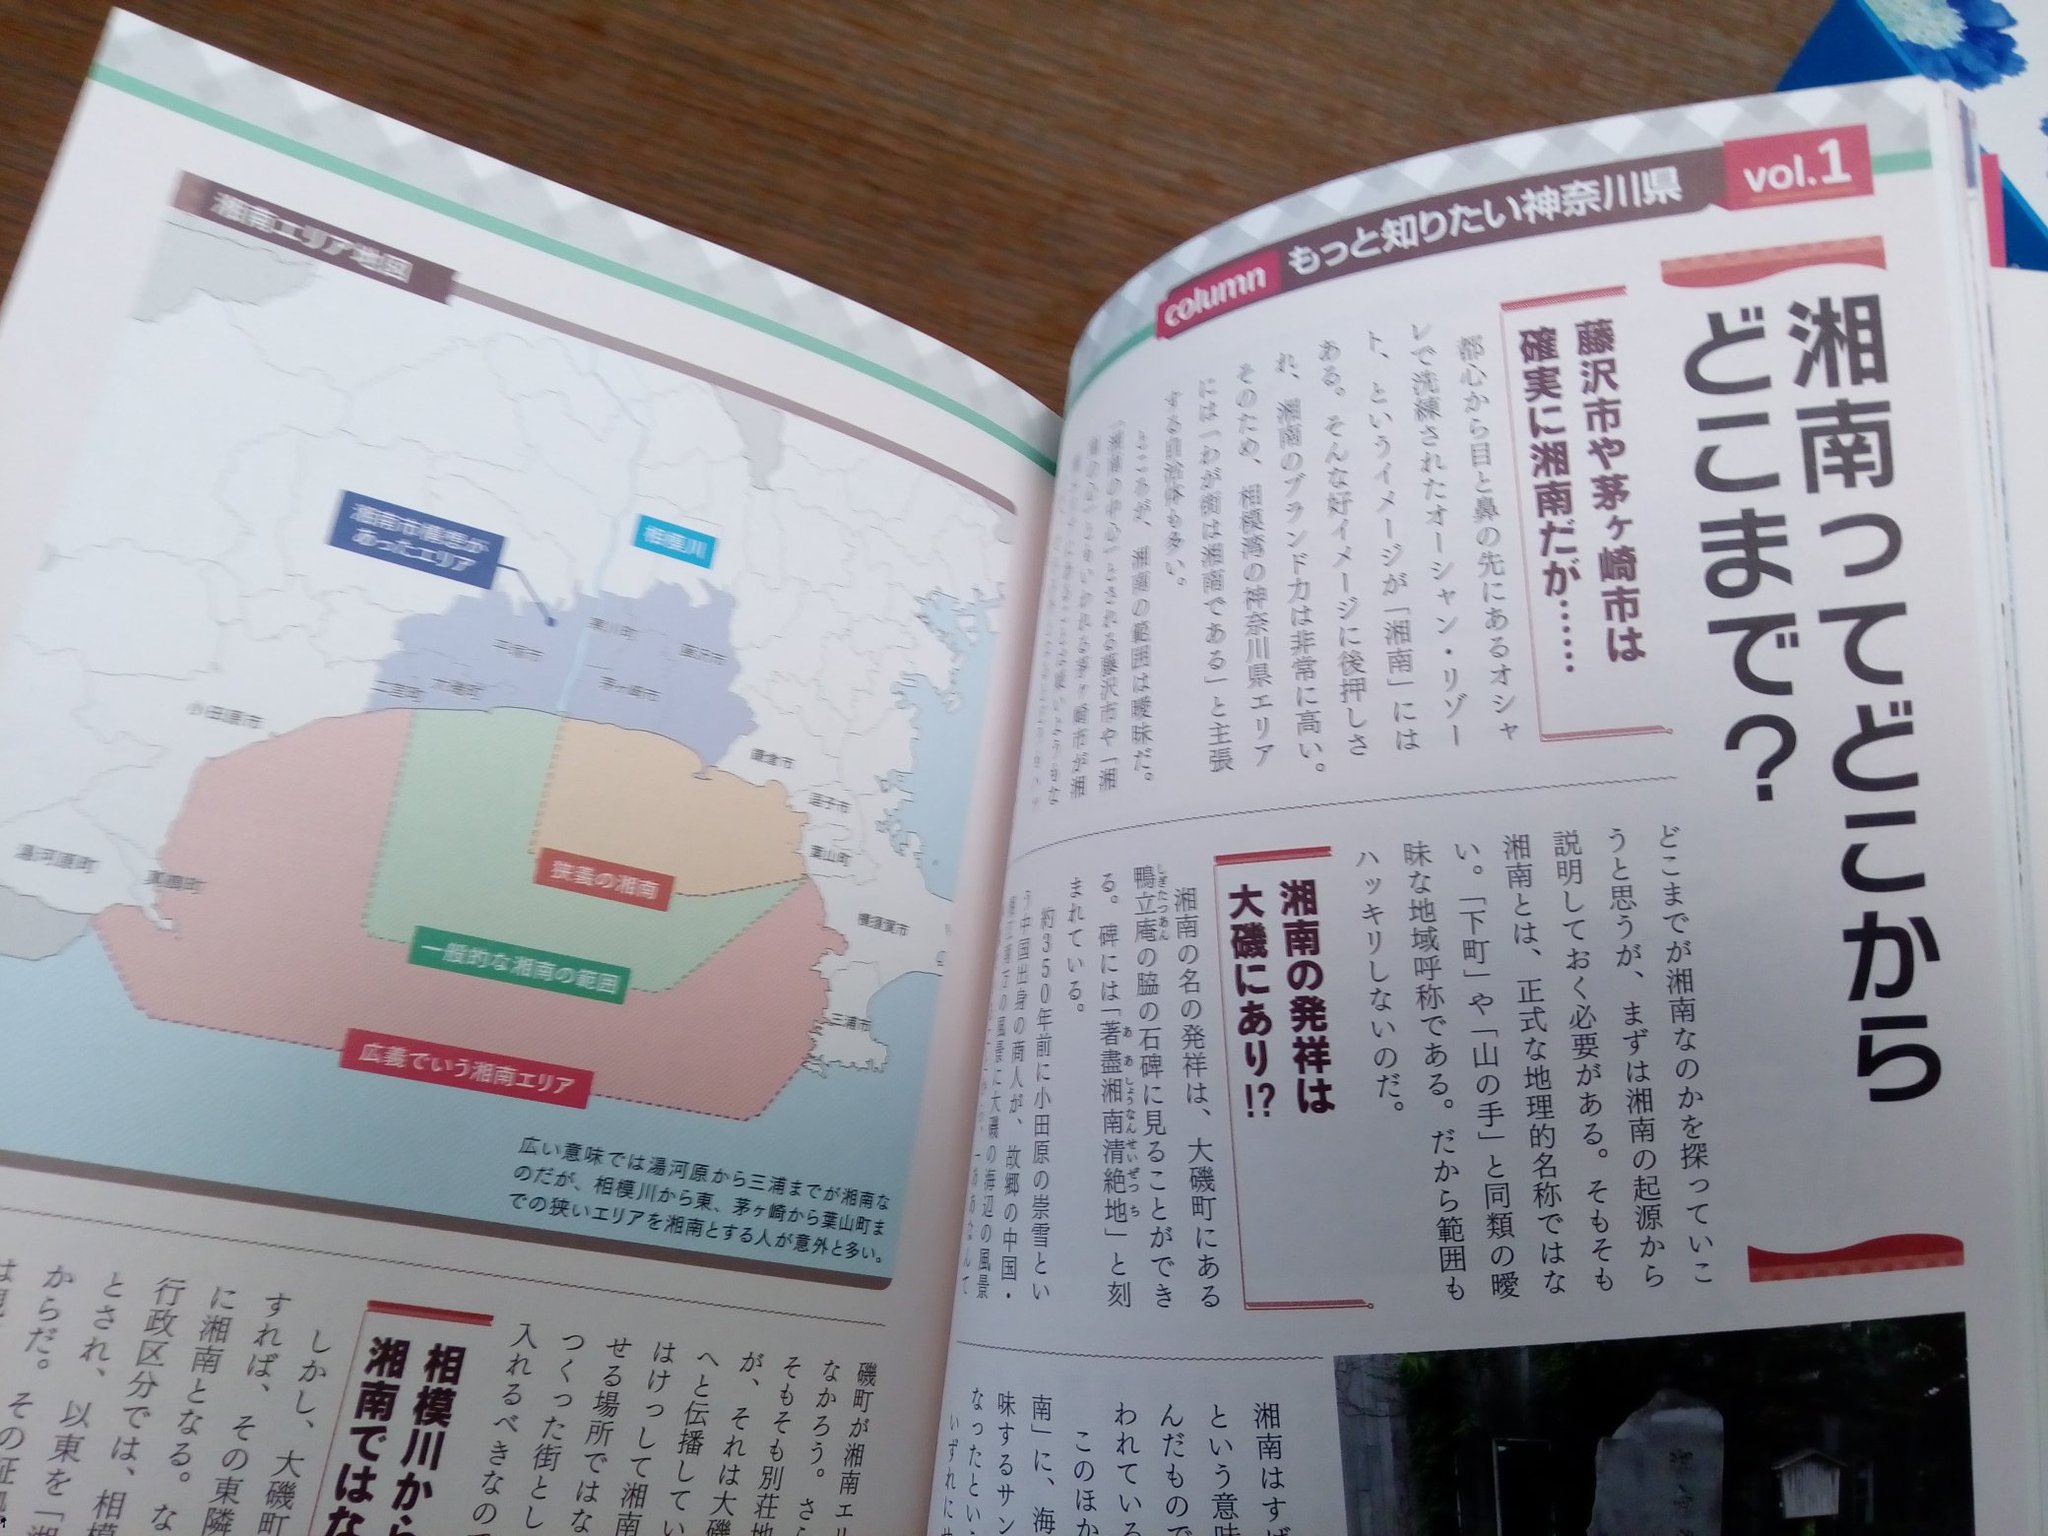 ｋ１４ A Twitter 父親が買ってきた 地図で楽しむすごい神奈川 て本がなかなか面白い 我が家は横浜市内だけど 江戸末期までは鎌倉郡だったらしいから ベルマーレのホームタウンってことにしとこう 笑 今日は Fリーグ の Bellmare がんばれー T